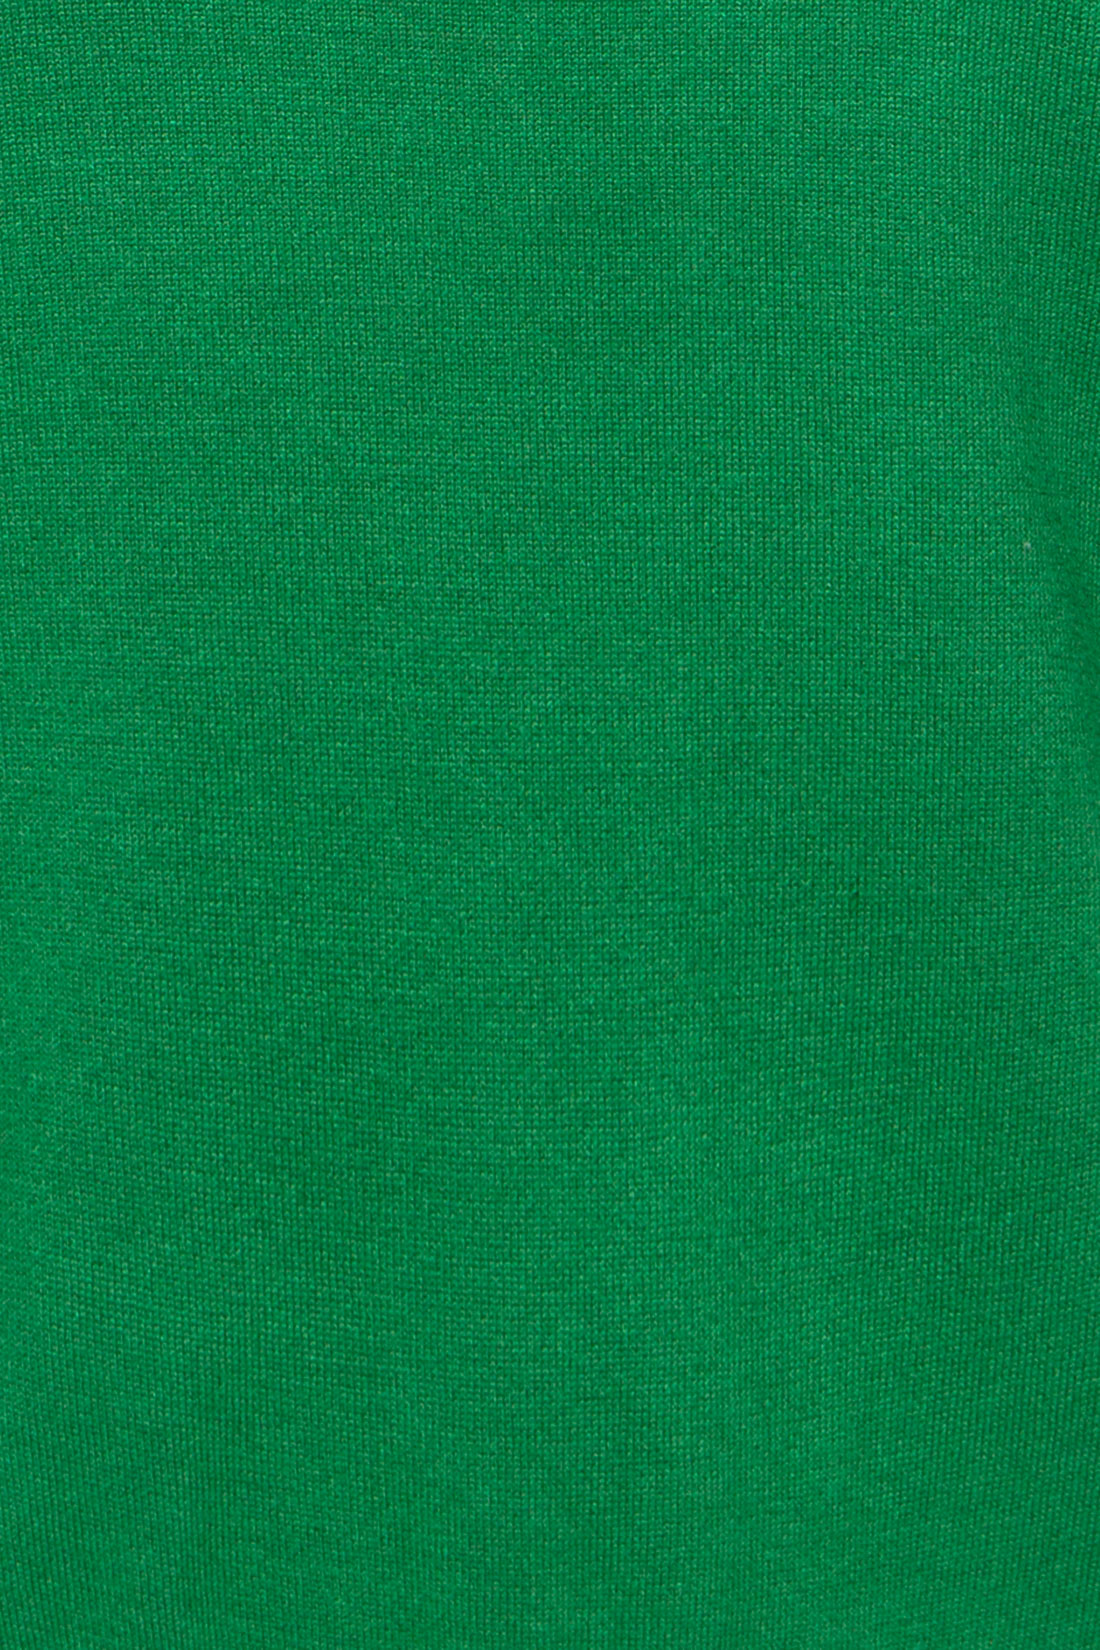 Яркий джемпер с длинными рукавами (арт. baon B137012), размер M, цвет белый Яркий джемпер с длинными рукавами (арт. baon B137012) - фото 3